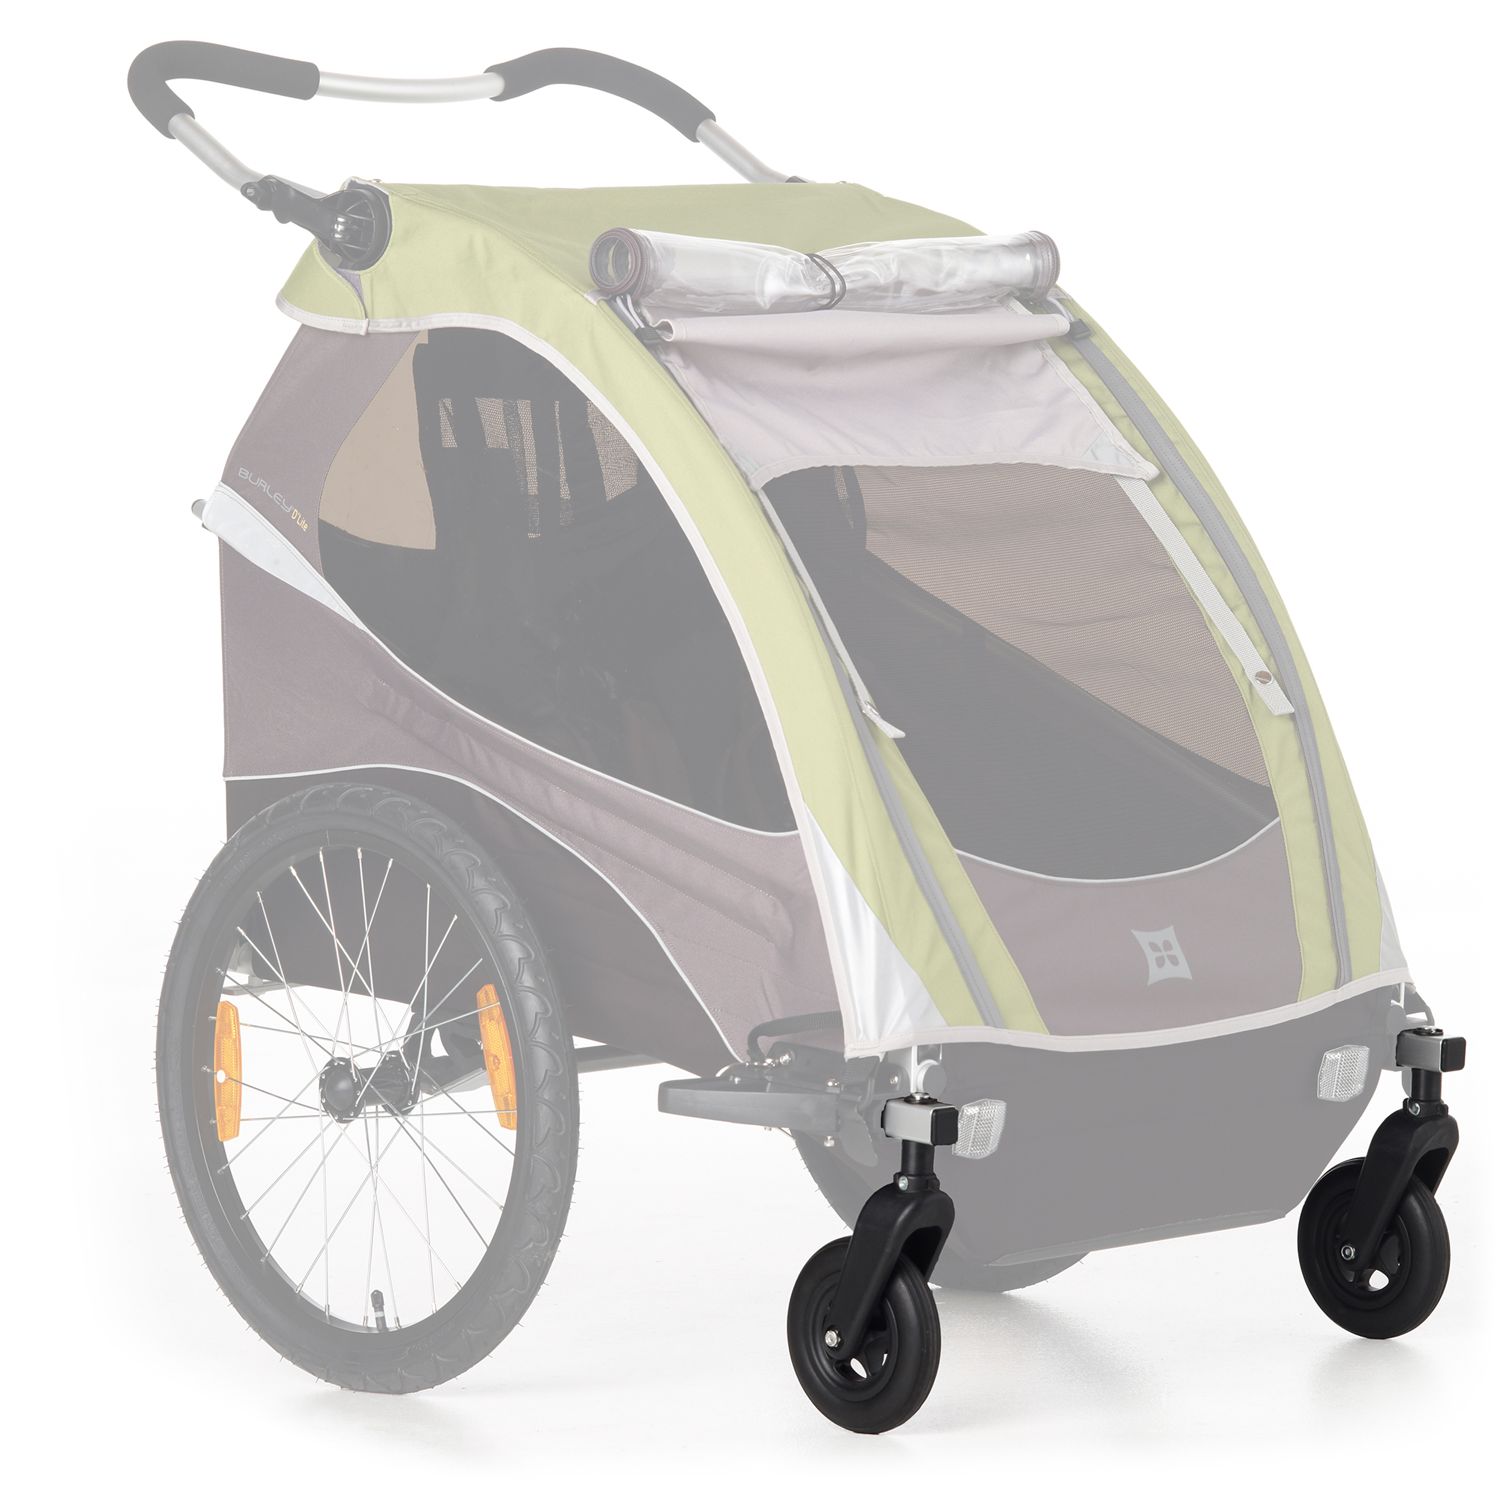 burley 1 wheel stroller kit